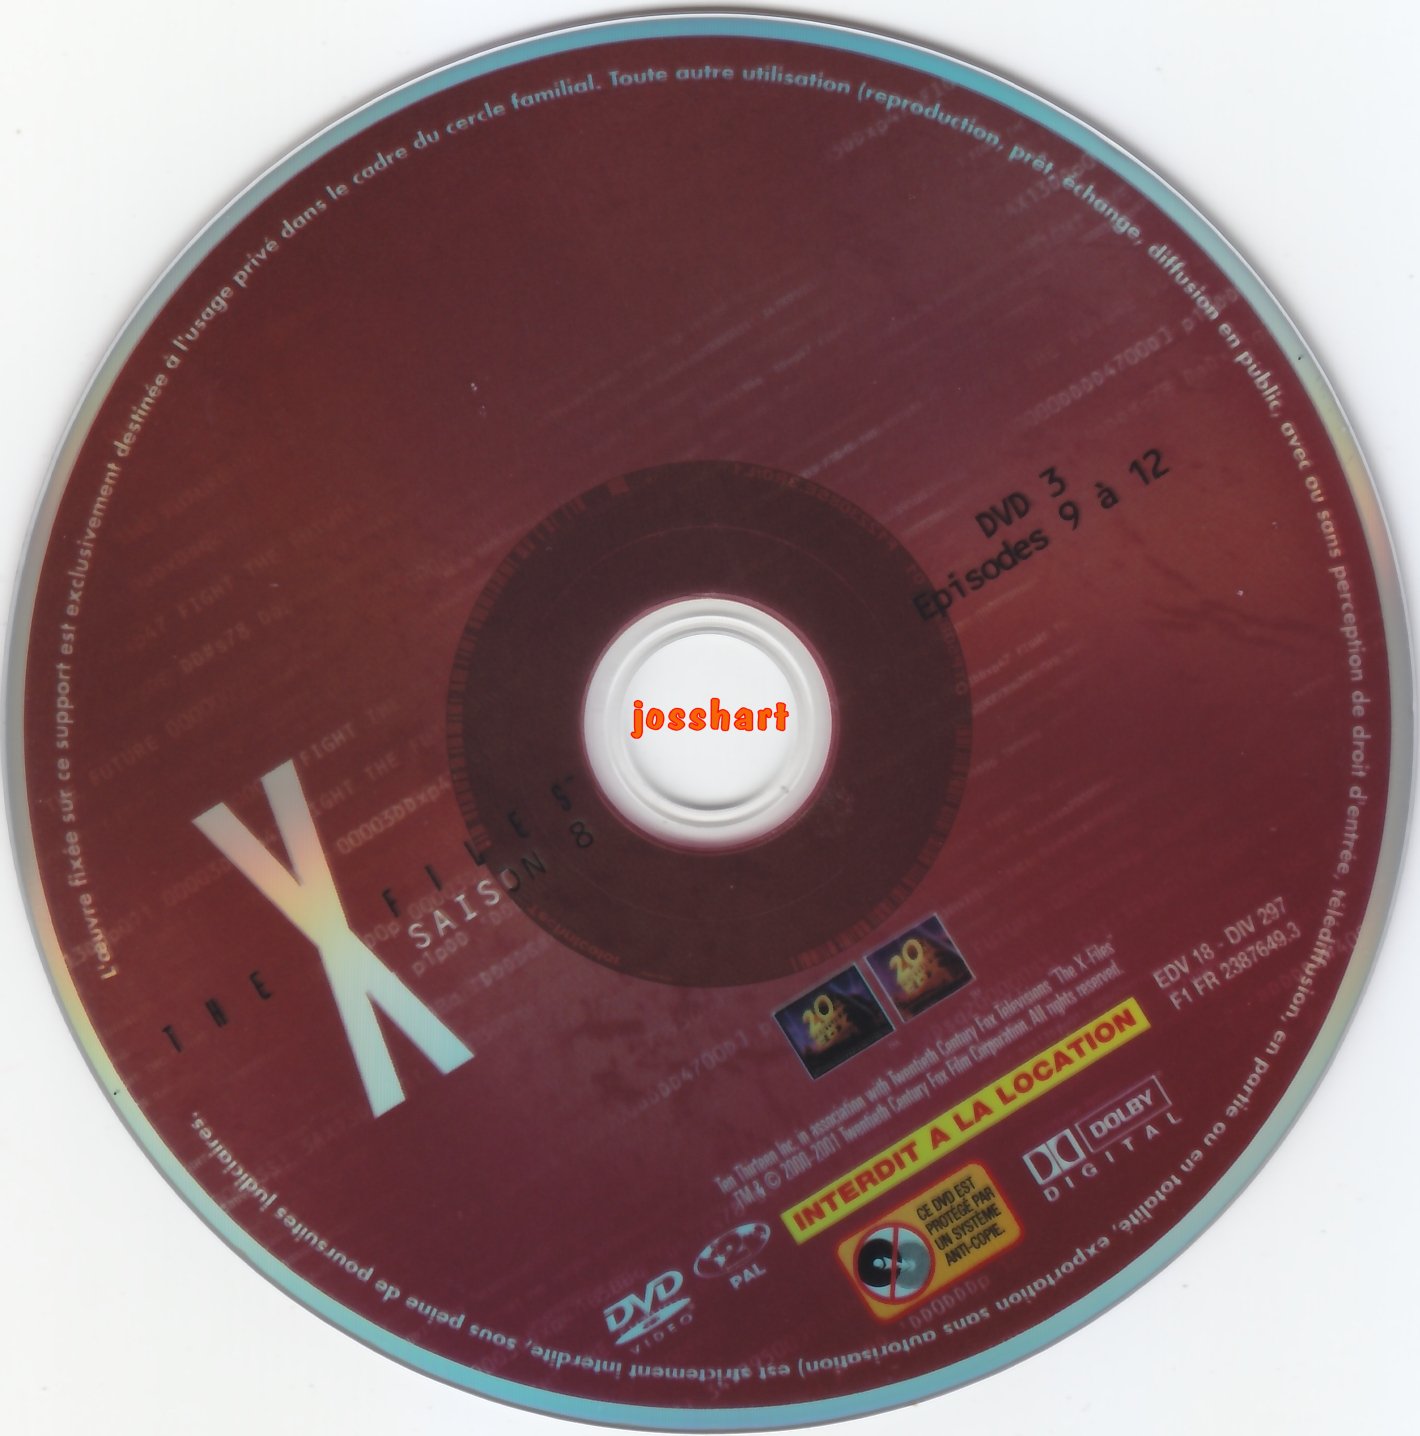 The X Files Saison 8 DVD 3 v2